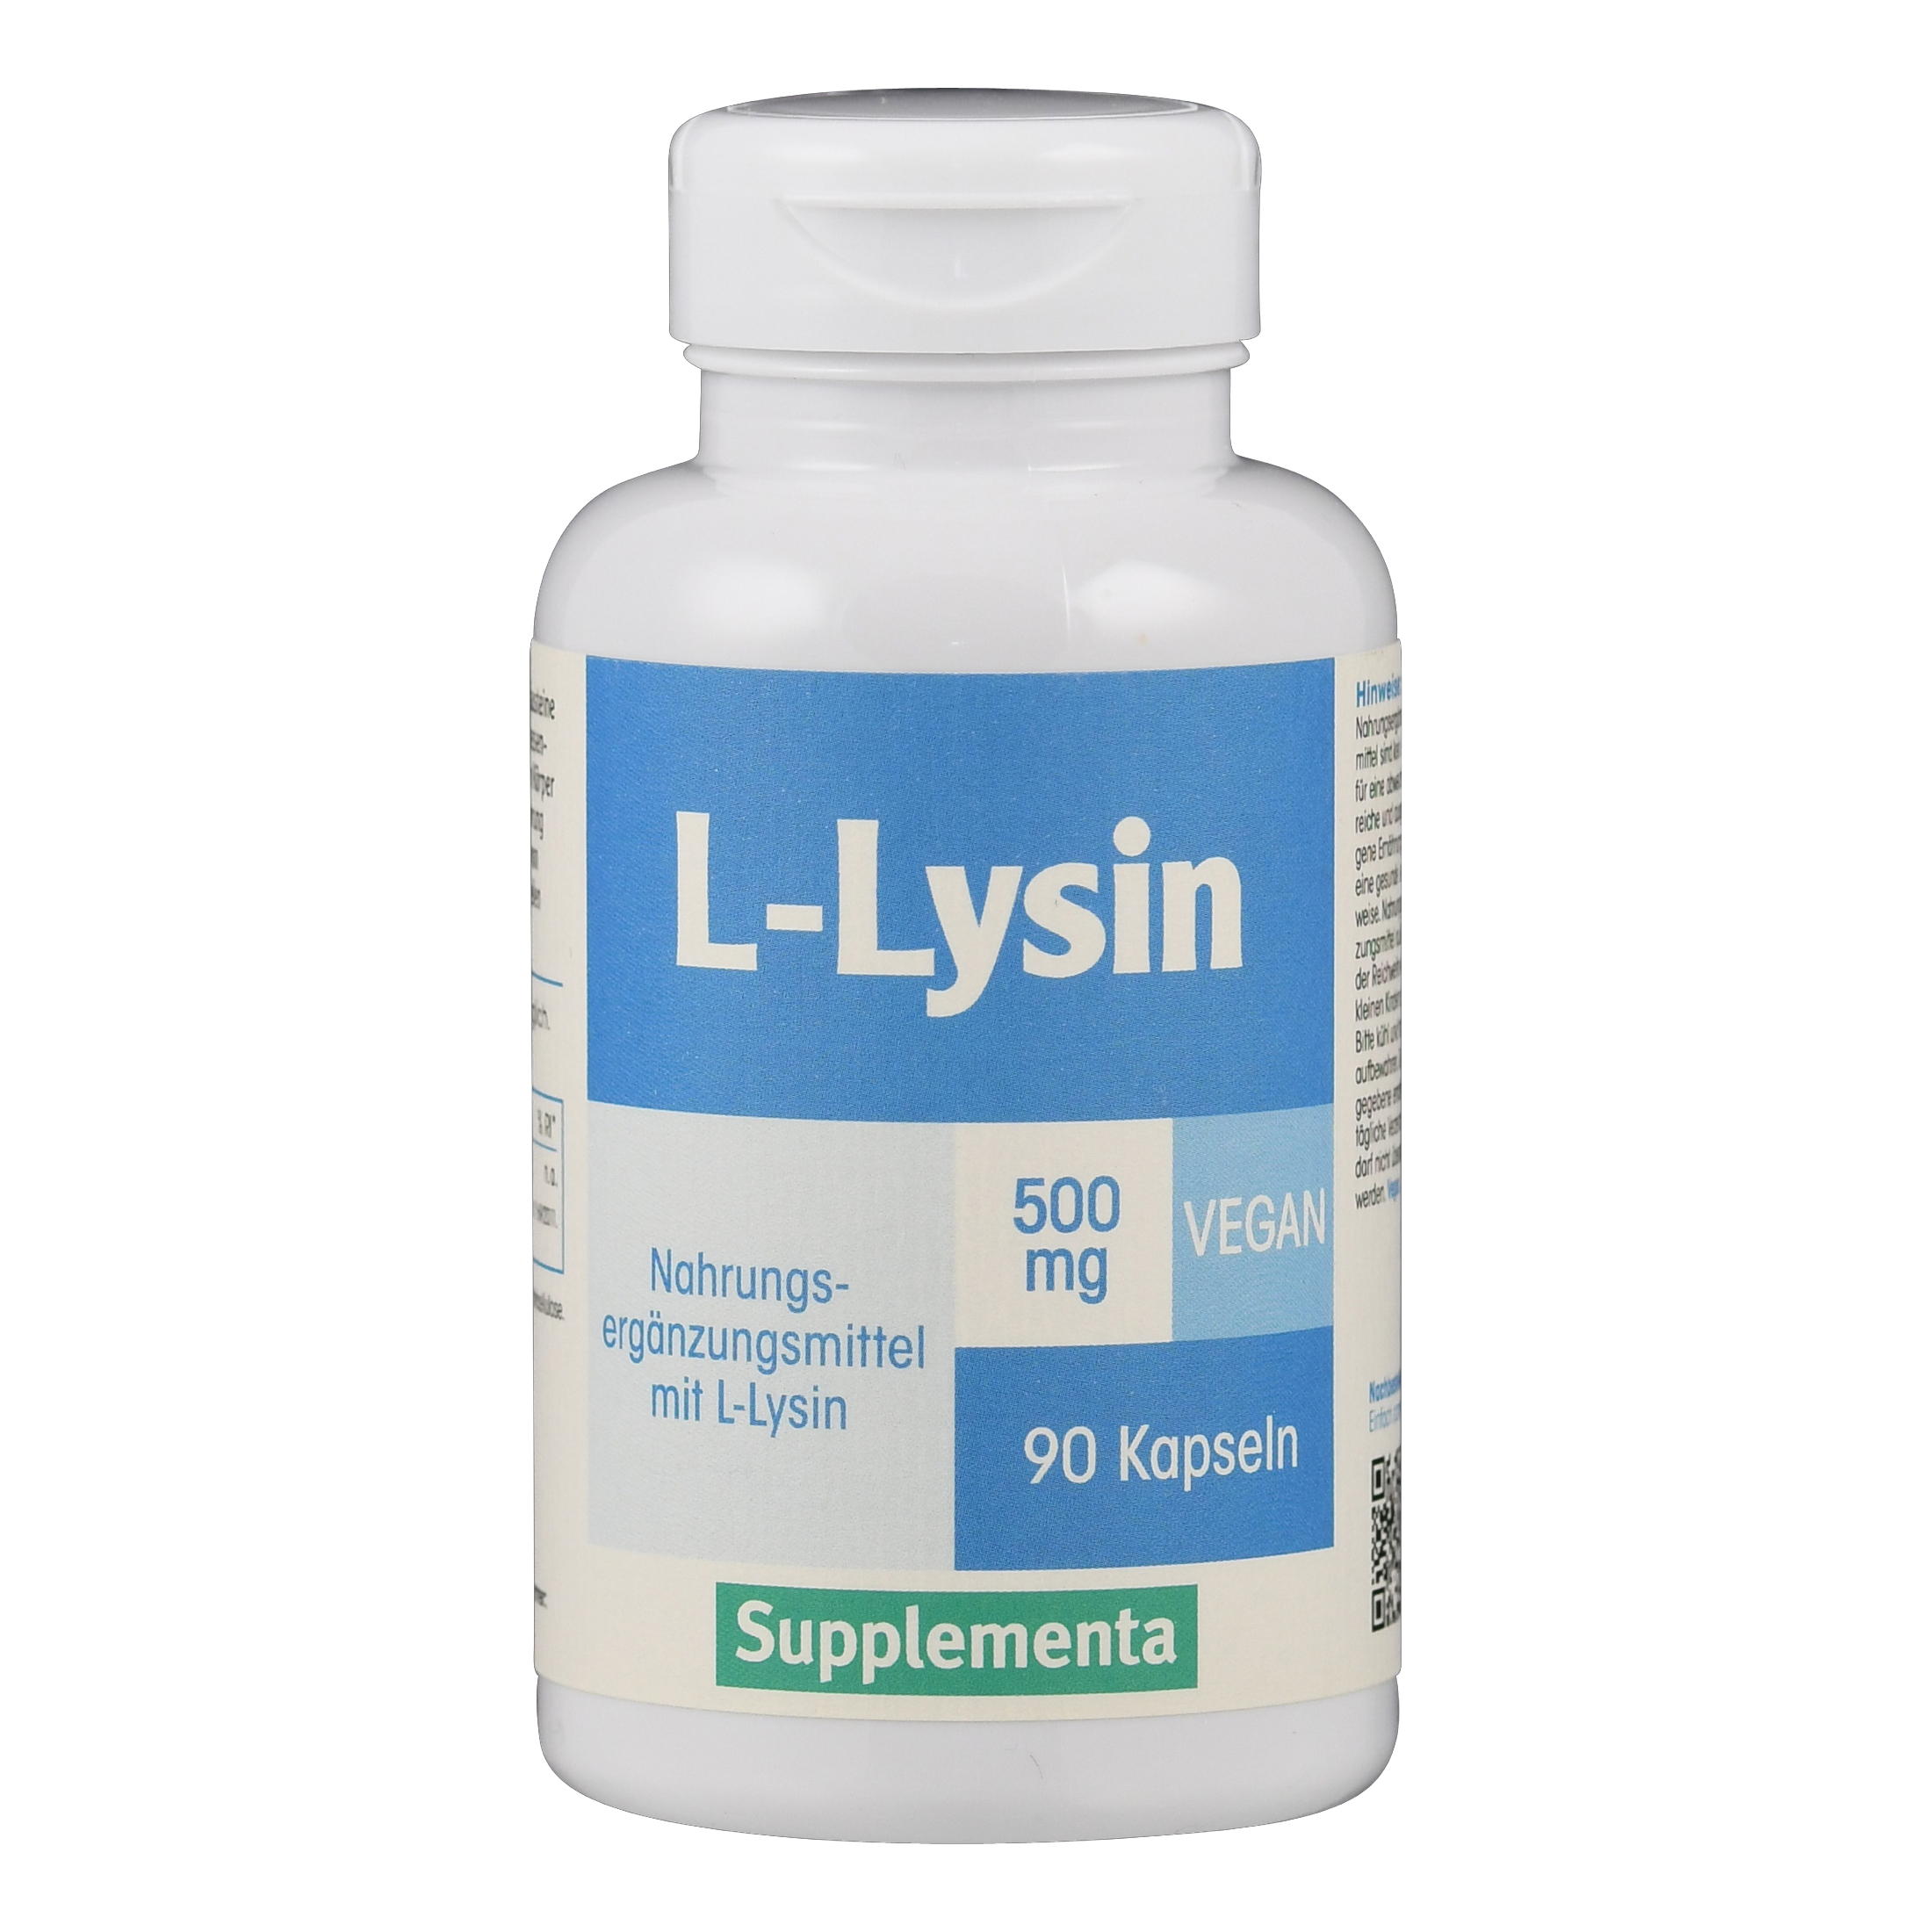 L-Lysin 500 mg Supplementa von Supplementa.